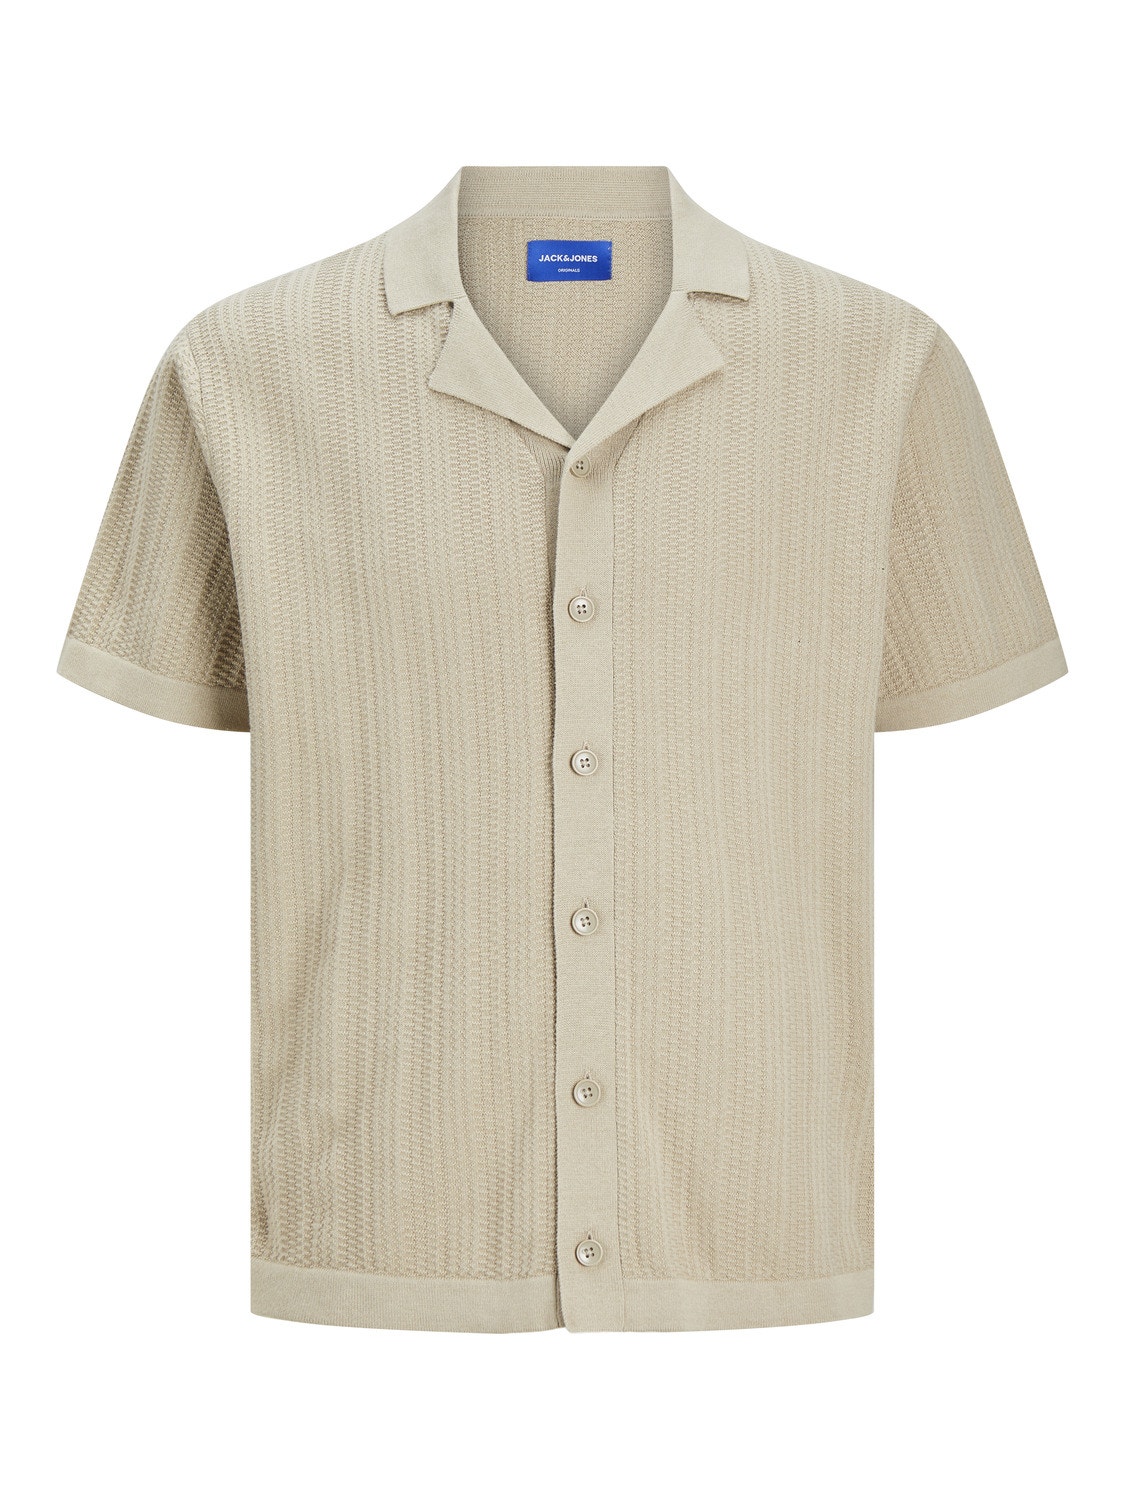 Jack & Jones Plain T-shirt -Fields Of Rye - 12253819